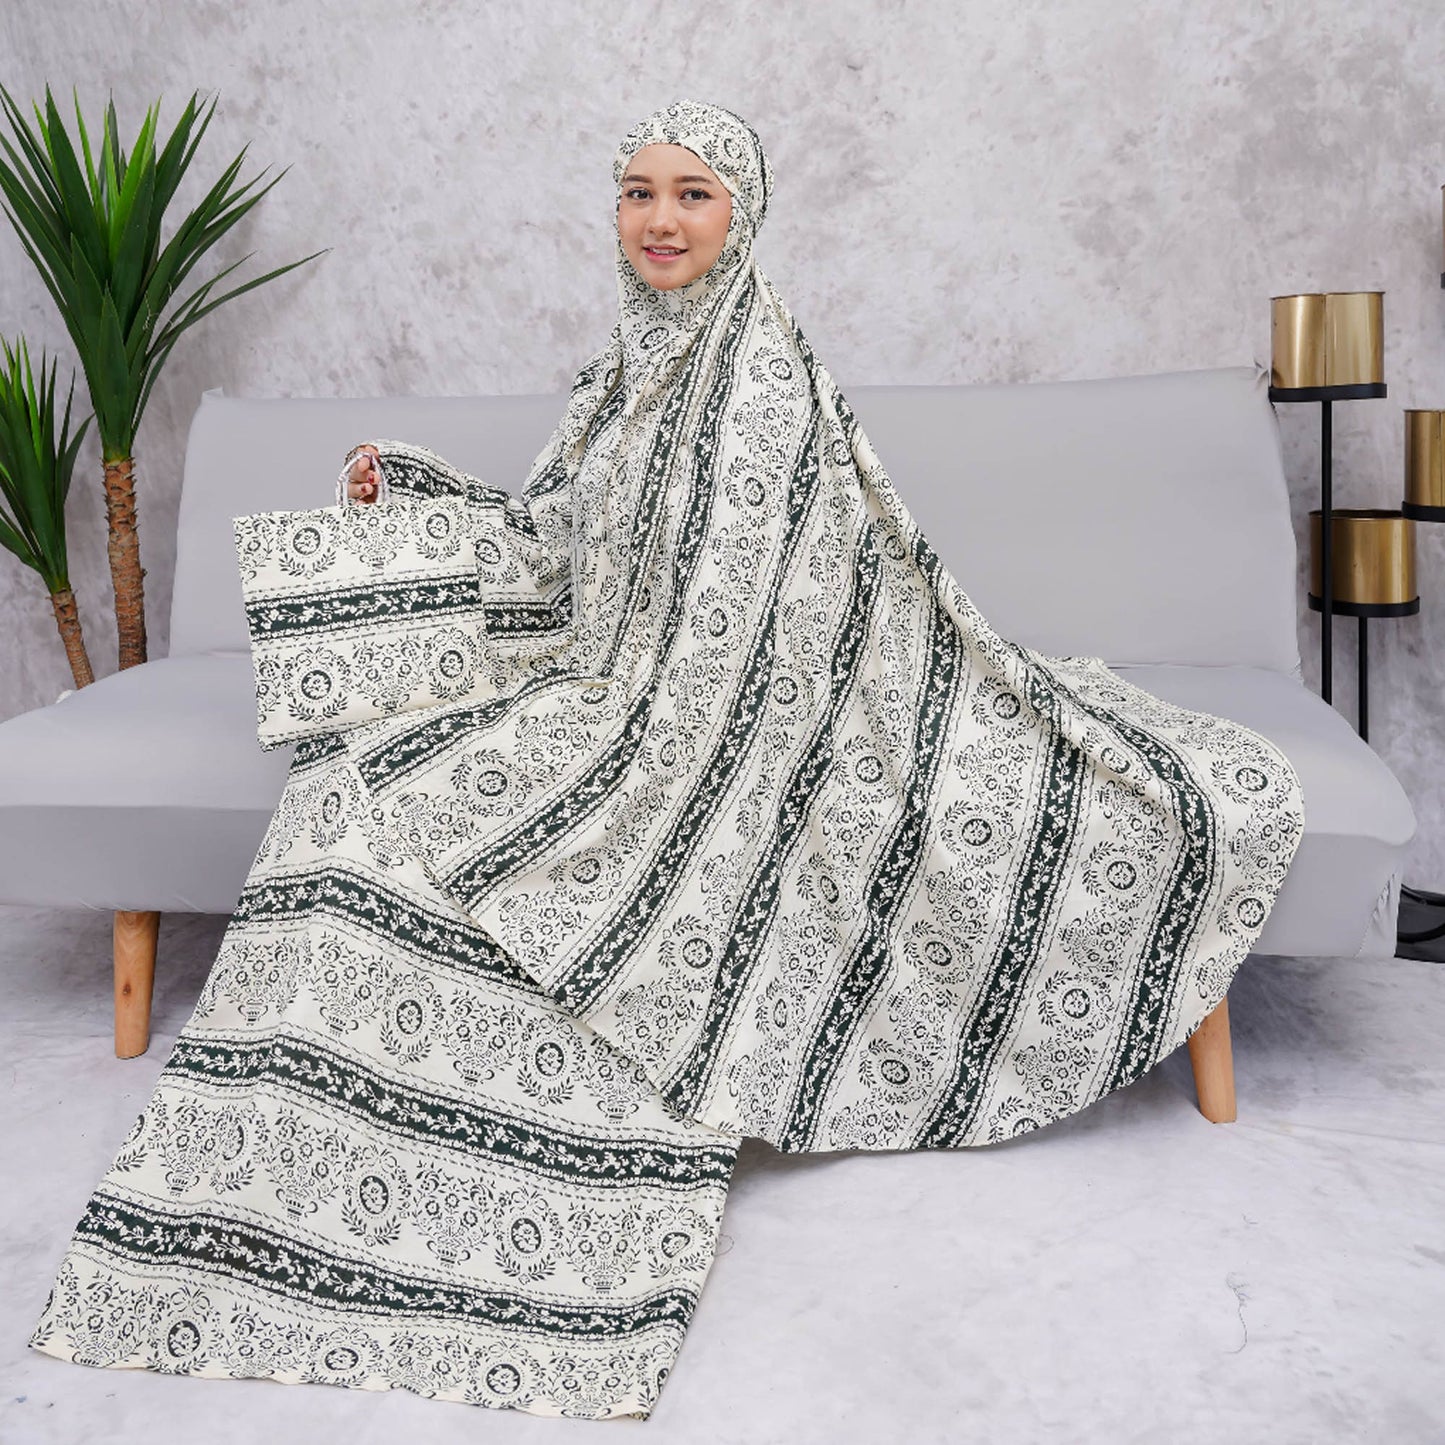 ZHAFIRA Variation Adult Mukena: Die richtige Wahl für einen anderen Look, muslimisches Gebetsoutfit, Gamis-Kleid, Gebetskleid für Frauen, Jilbab-Kleid